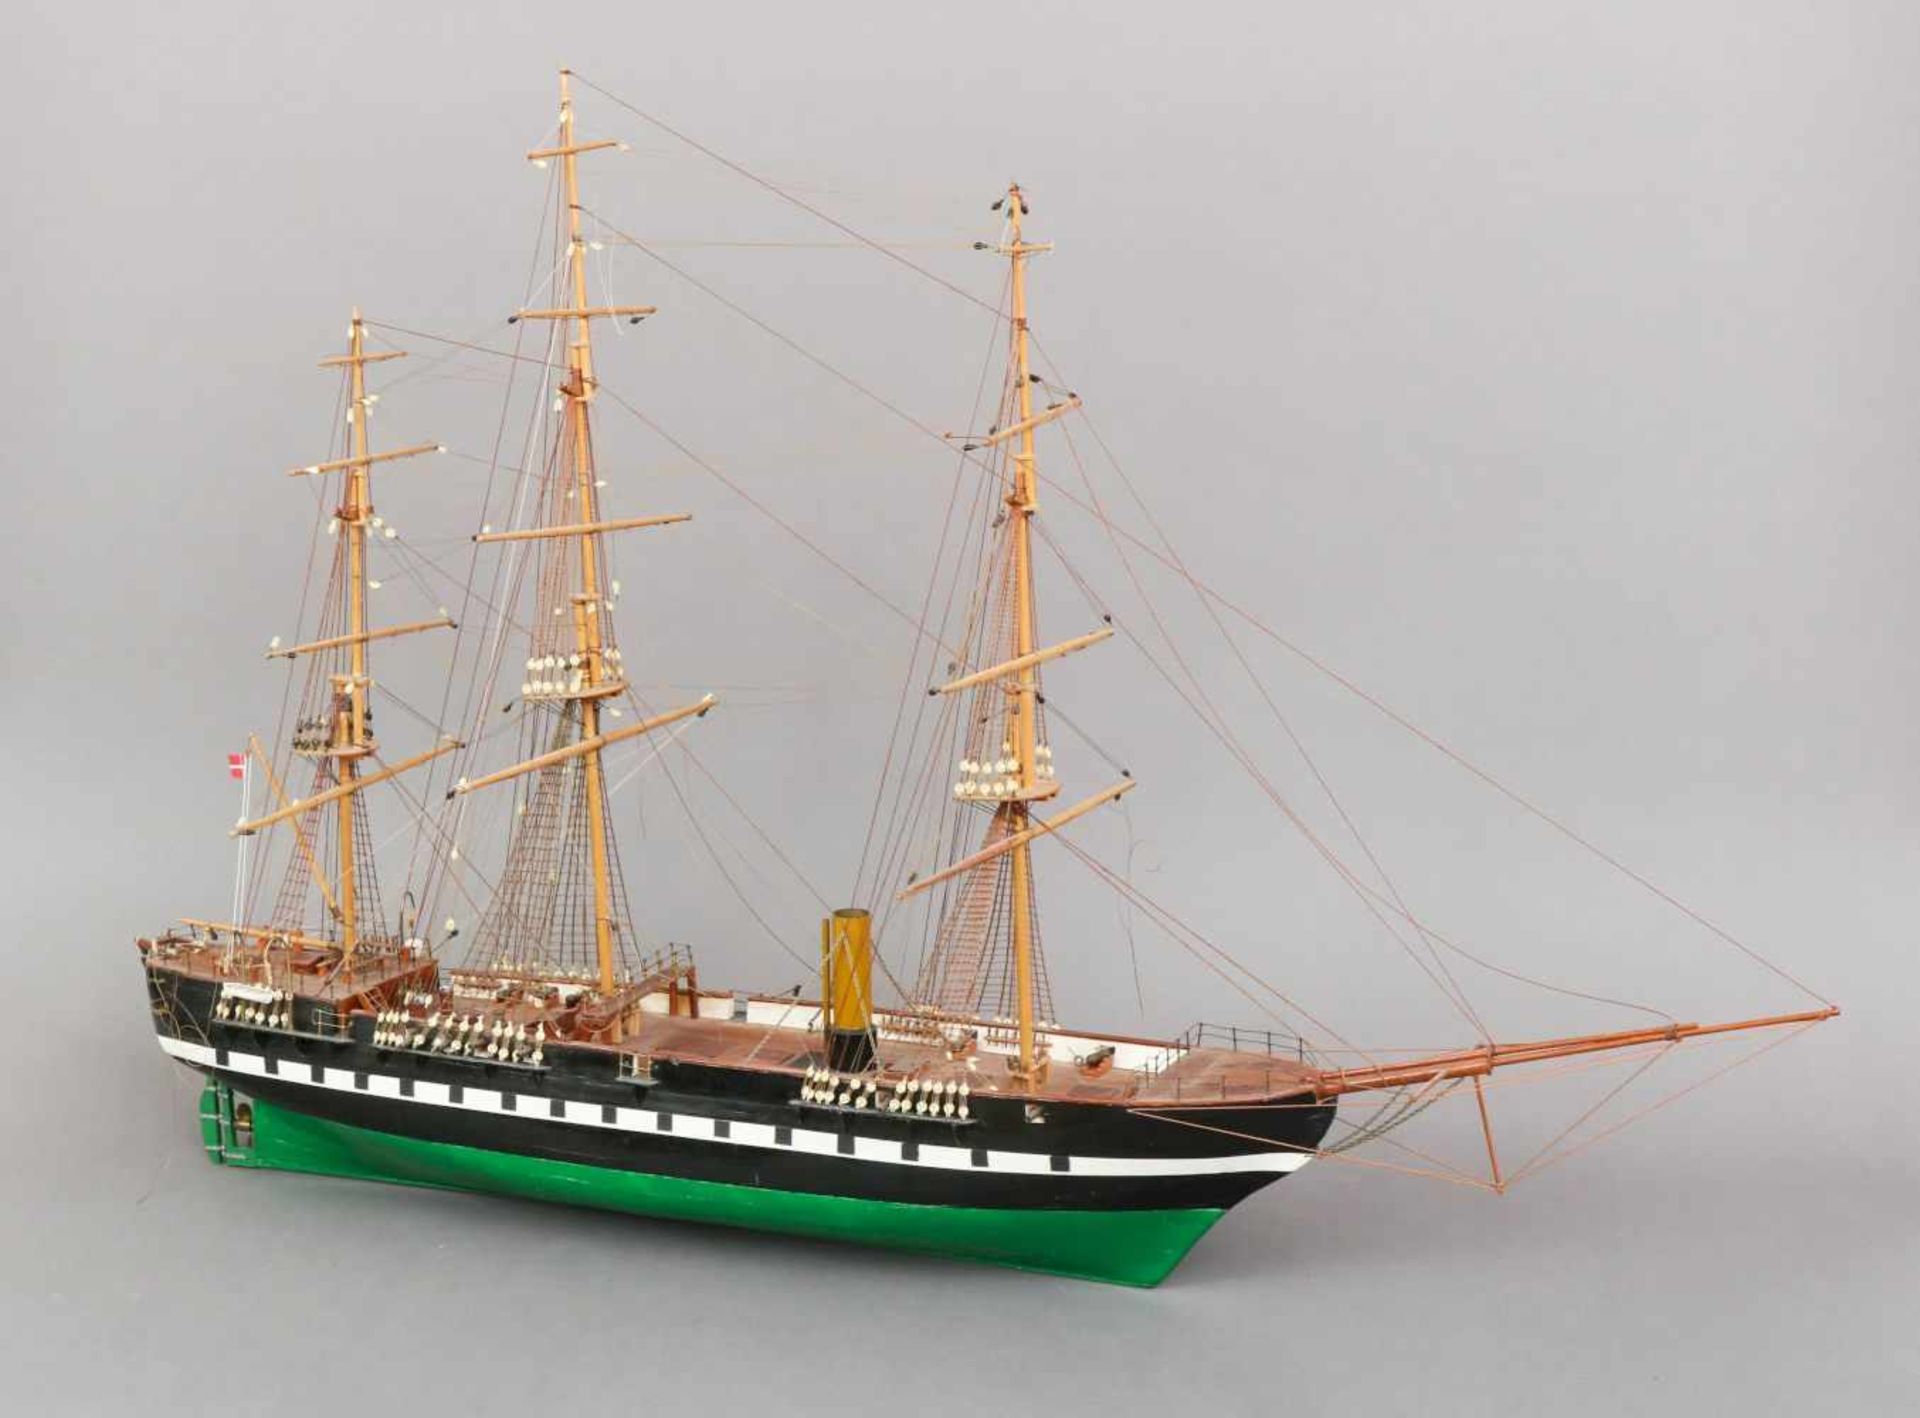 Modellschiff eines frühen Dampfseglers ¨3-Master unter dänischer Flagge¨Holz, Rumpf farbig bemalt,